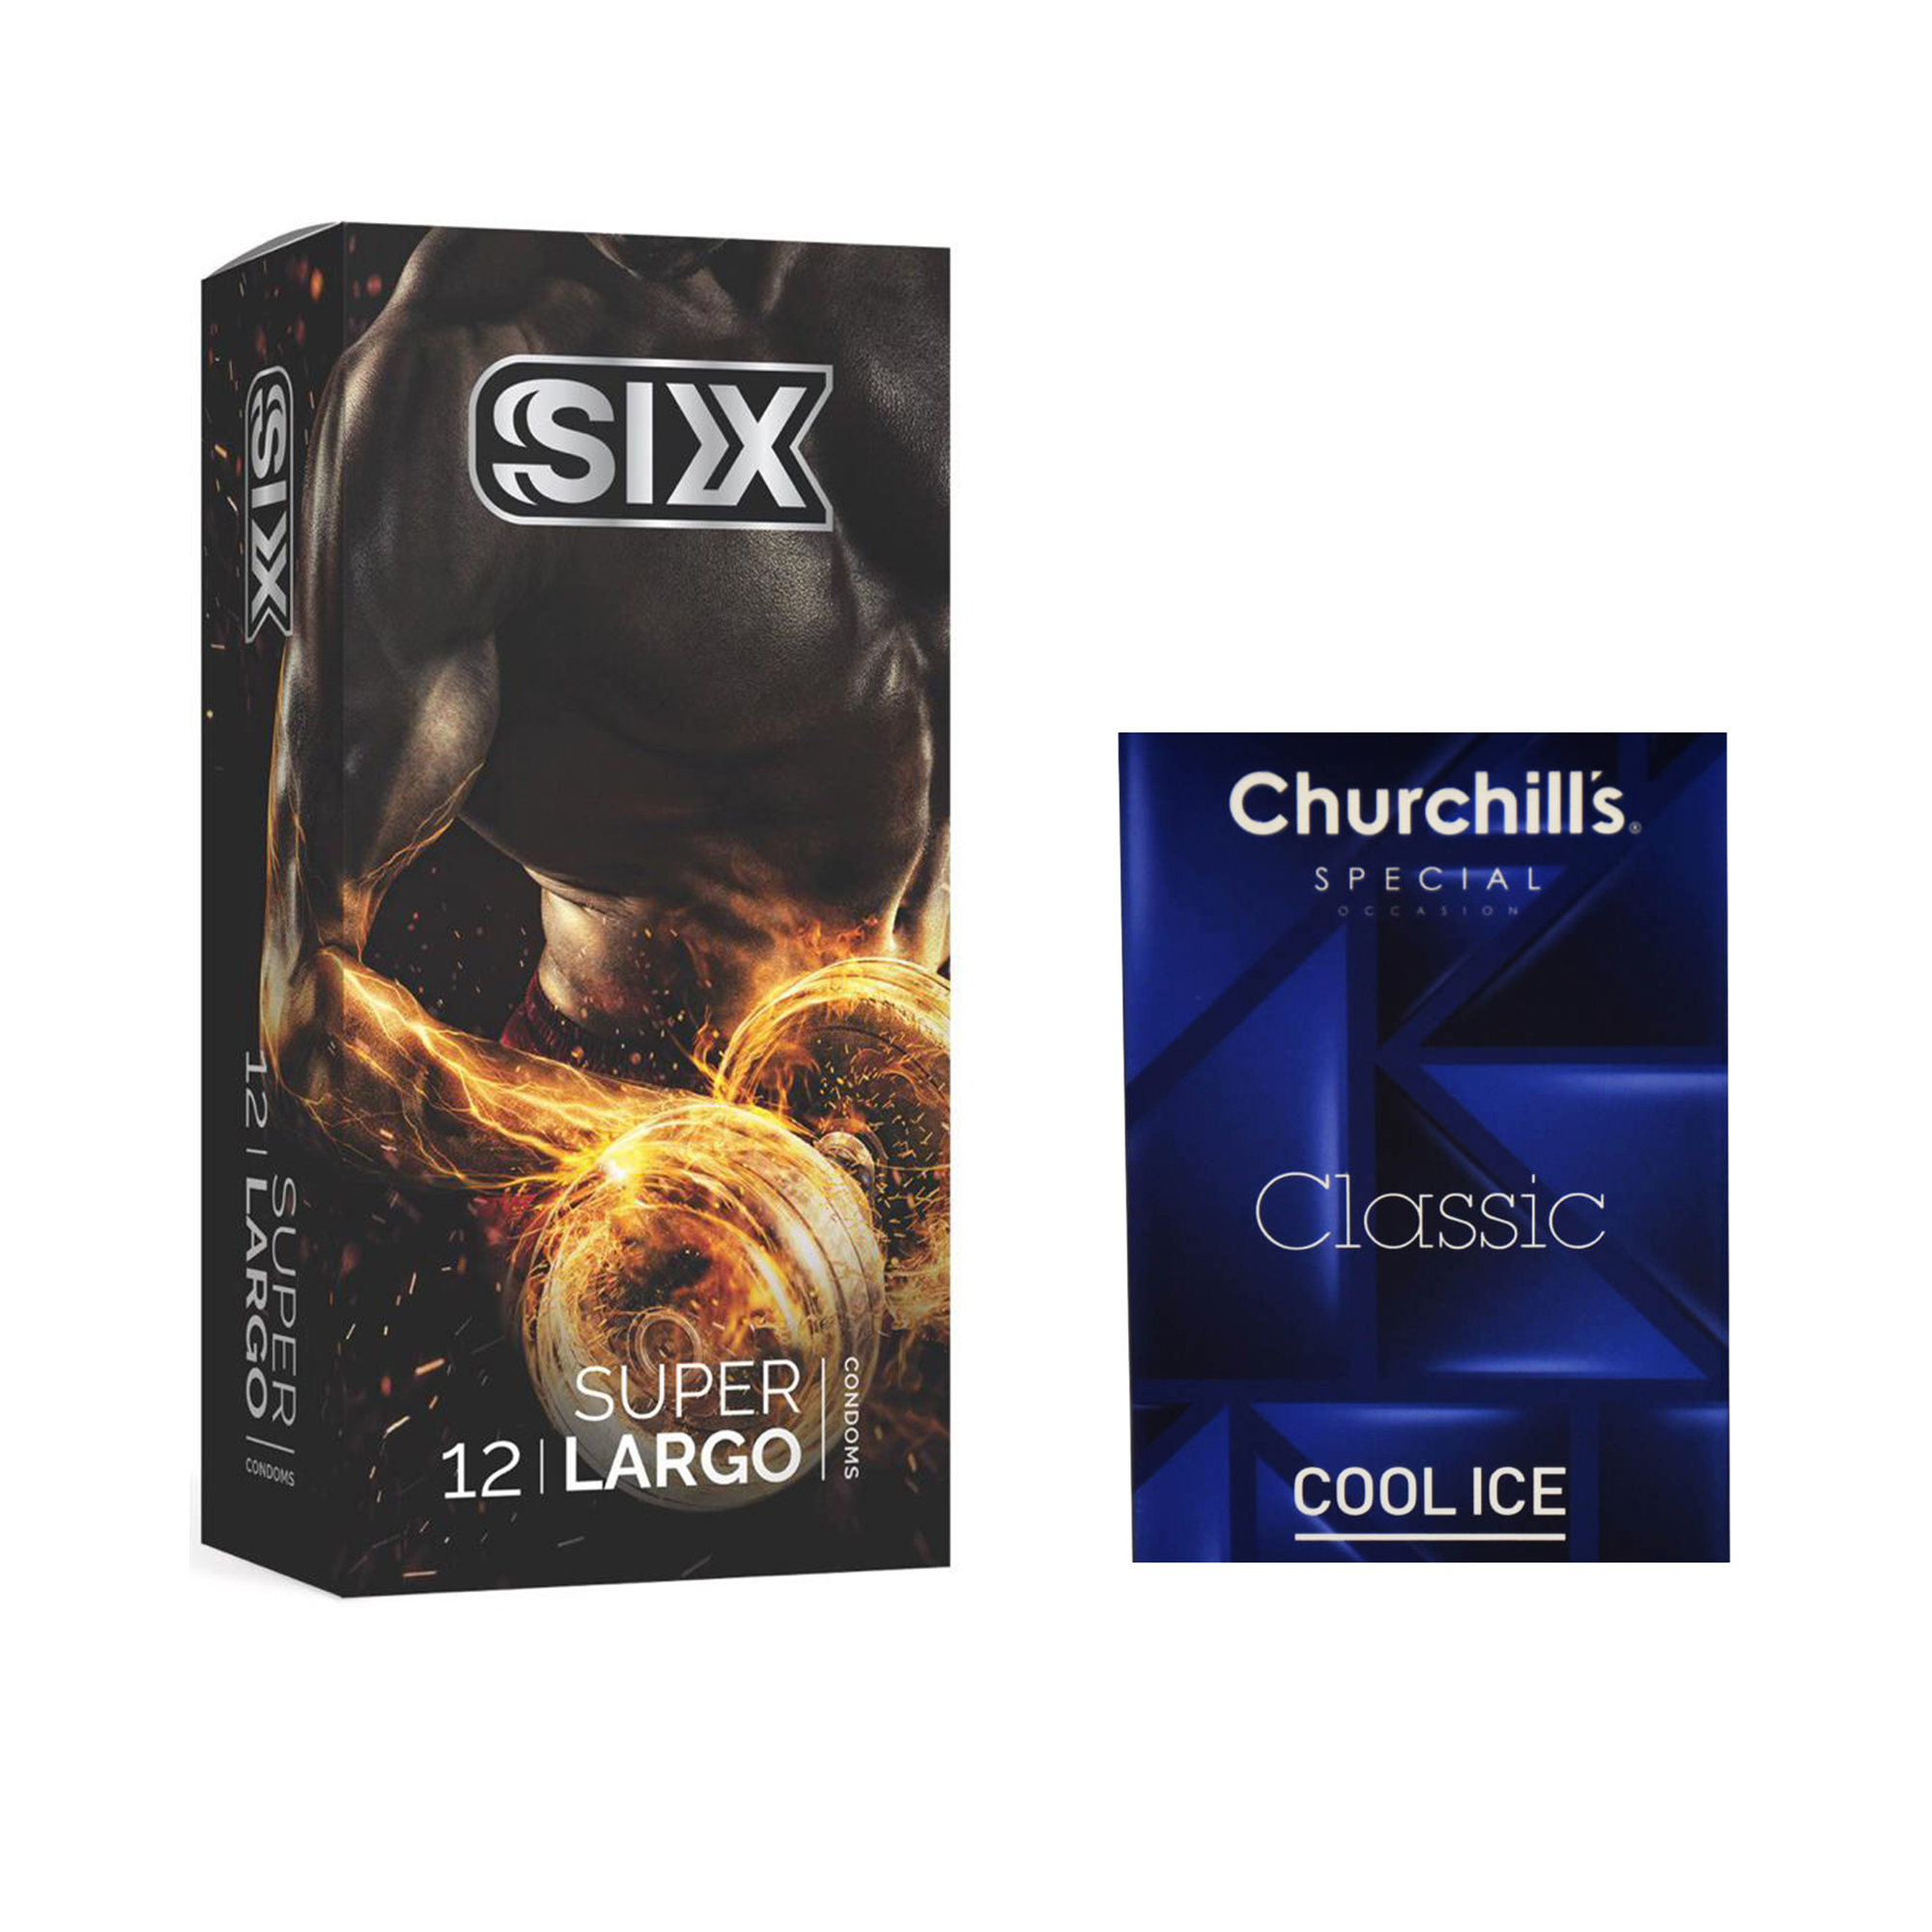 کاندوم سیکس مدل Super Largo بسته 12 عددی به همراه کاندوم چرچیلز مدل Cool Ice بسته 3 عددی -  - 2